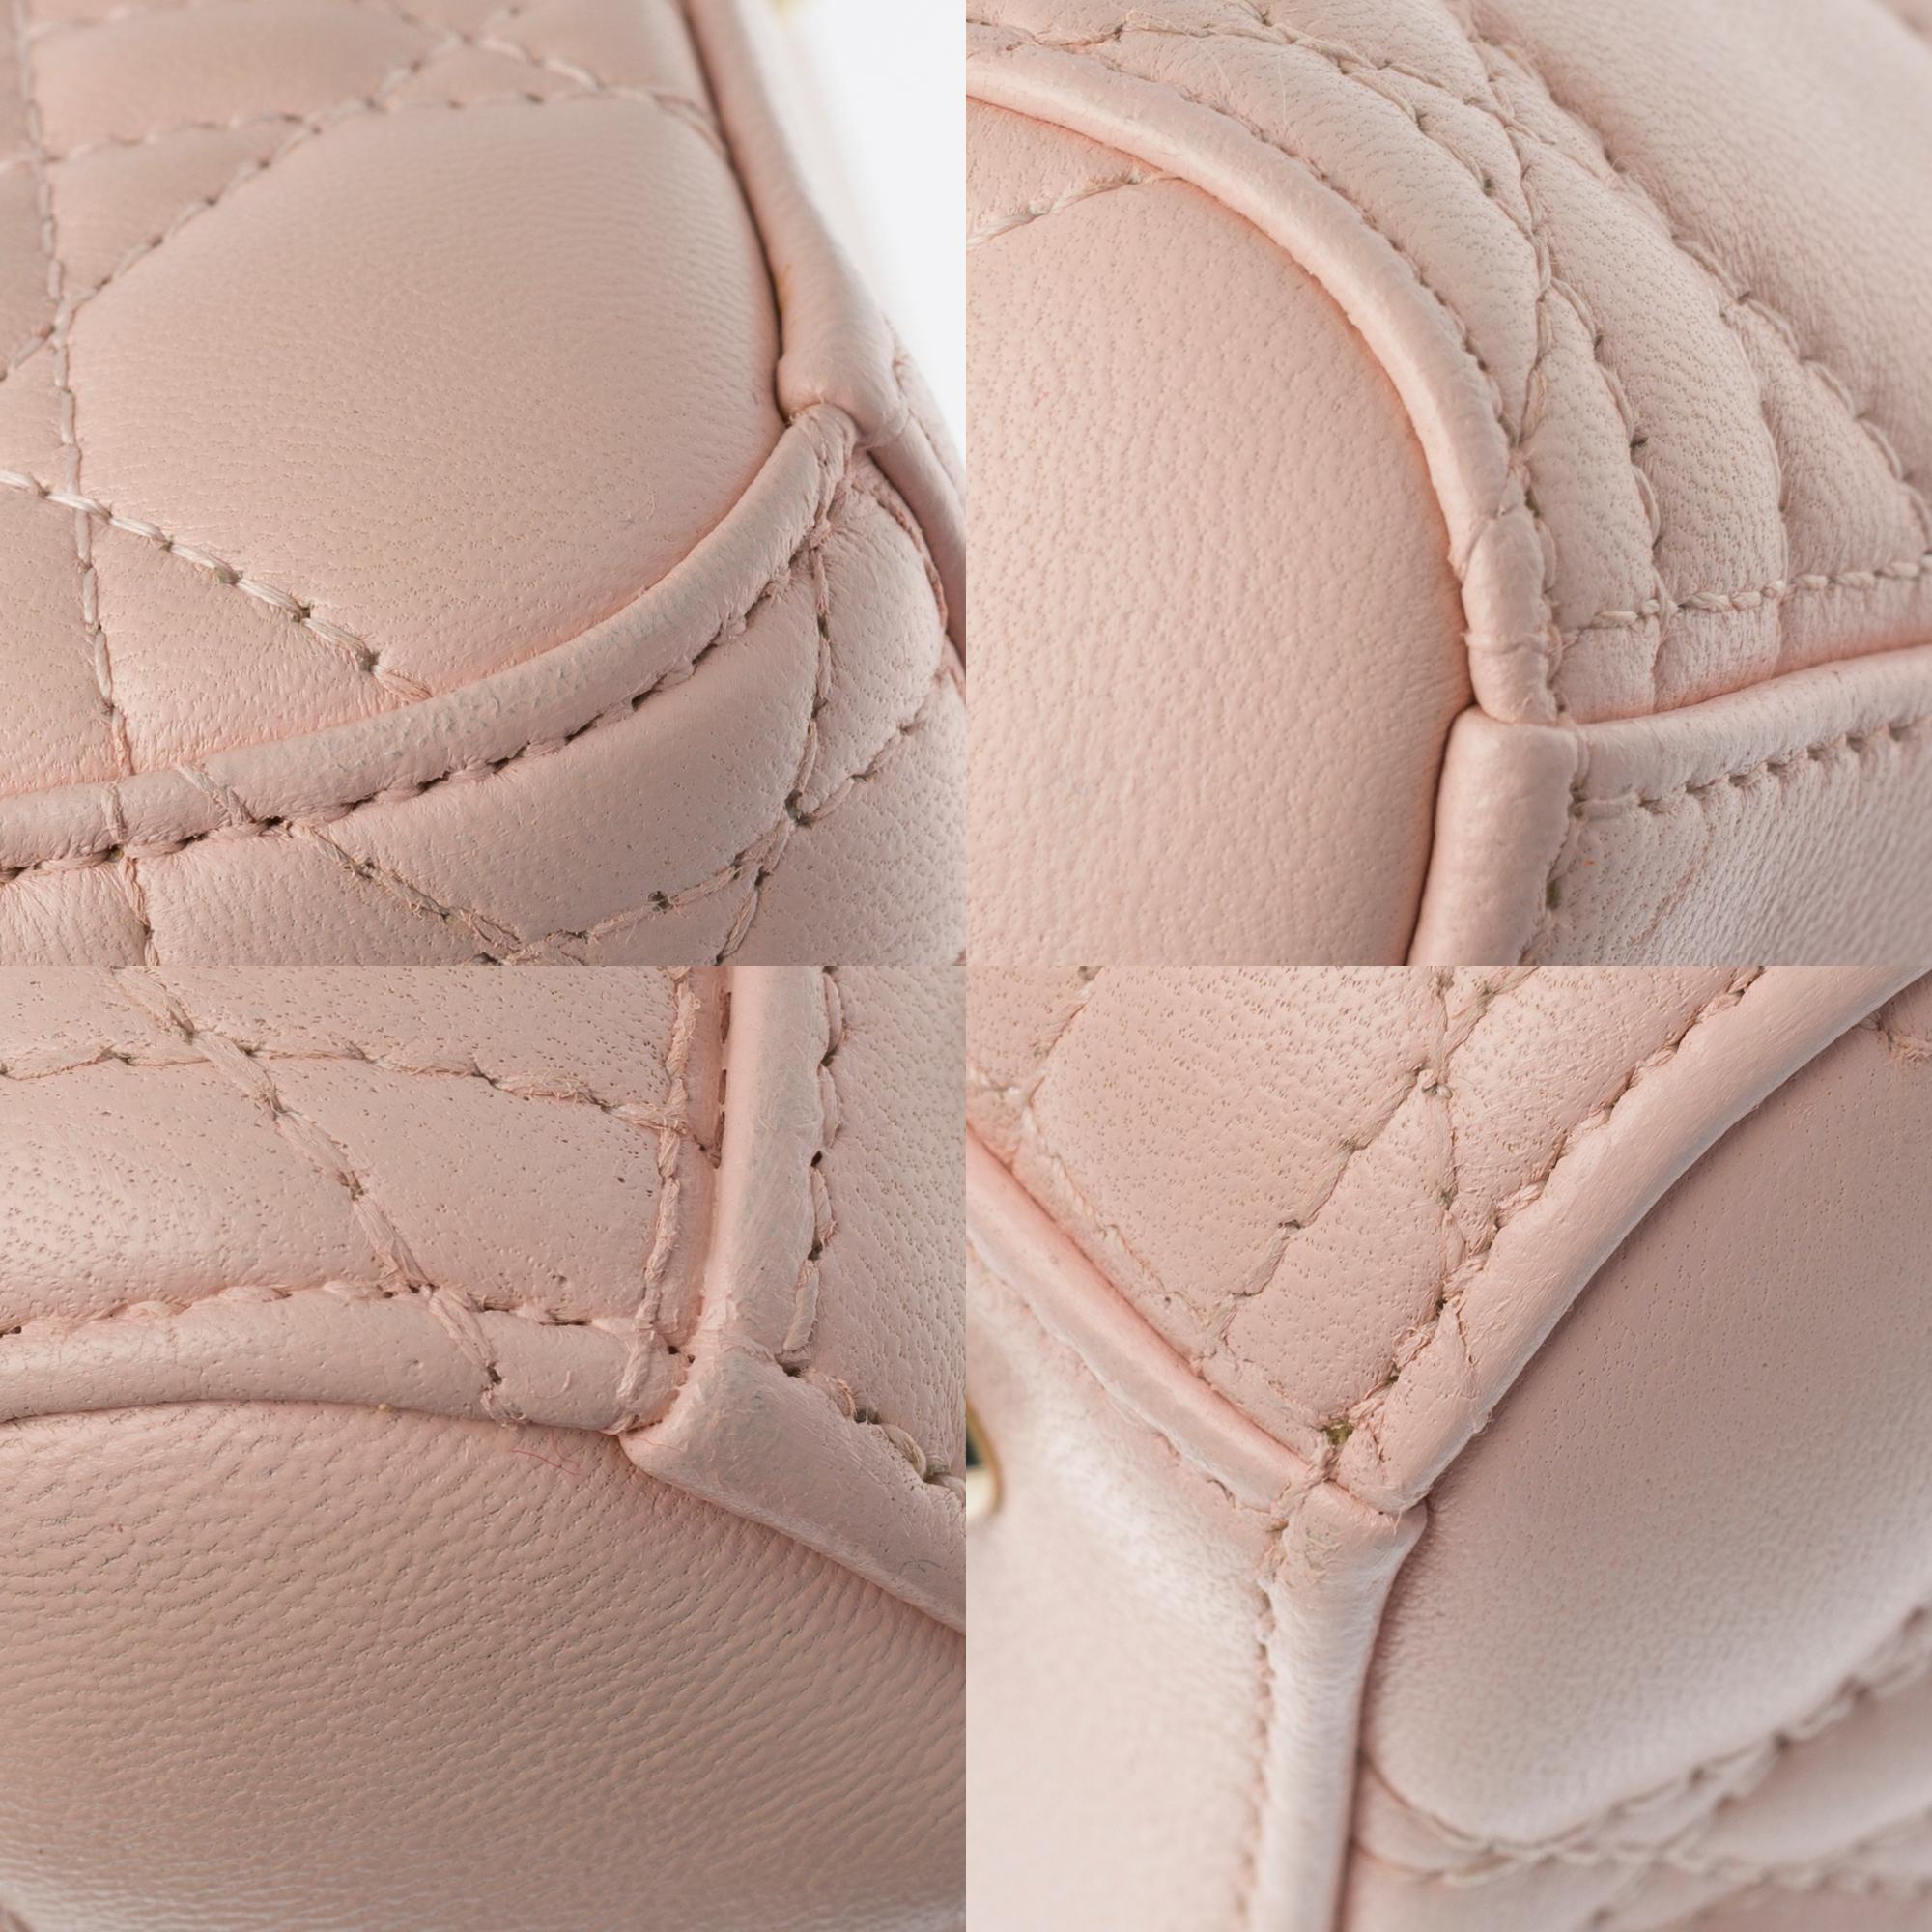  Christian Dior Lady Dior Medium size handbag in Pink cannage leather, GHW 2